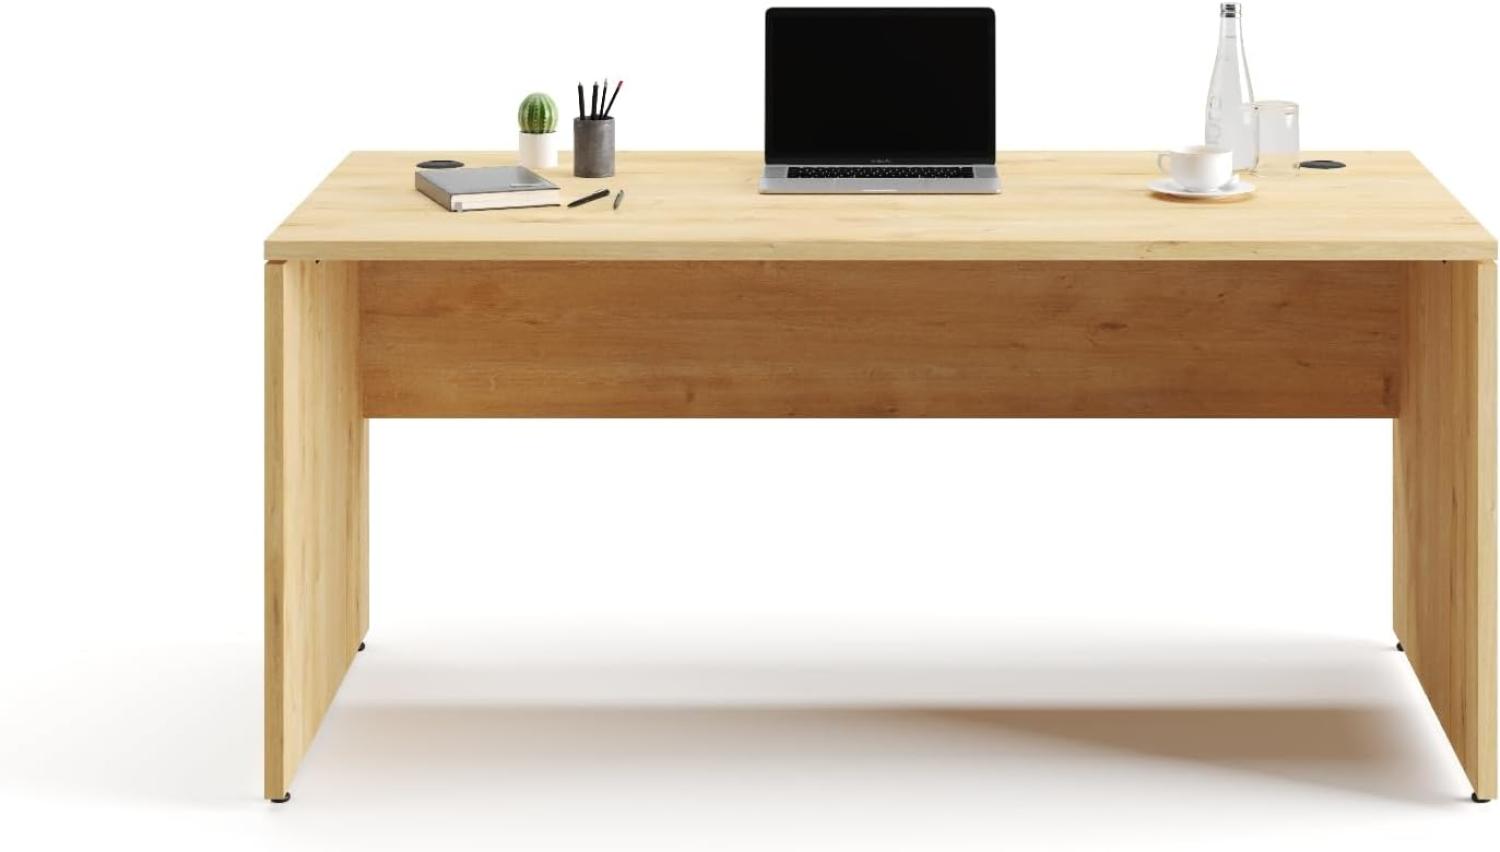 Furni24 Schreibtisch fürs Arbeitszimmer und Home Office - Großer laminierter Computertisch aus Holz, 2 Kabeldurchlässe, Bodengleiter, 2-Personen-Arbeitsplatz (Saphir-Eiche, 160x80x75 cm) Bild 1